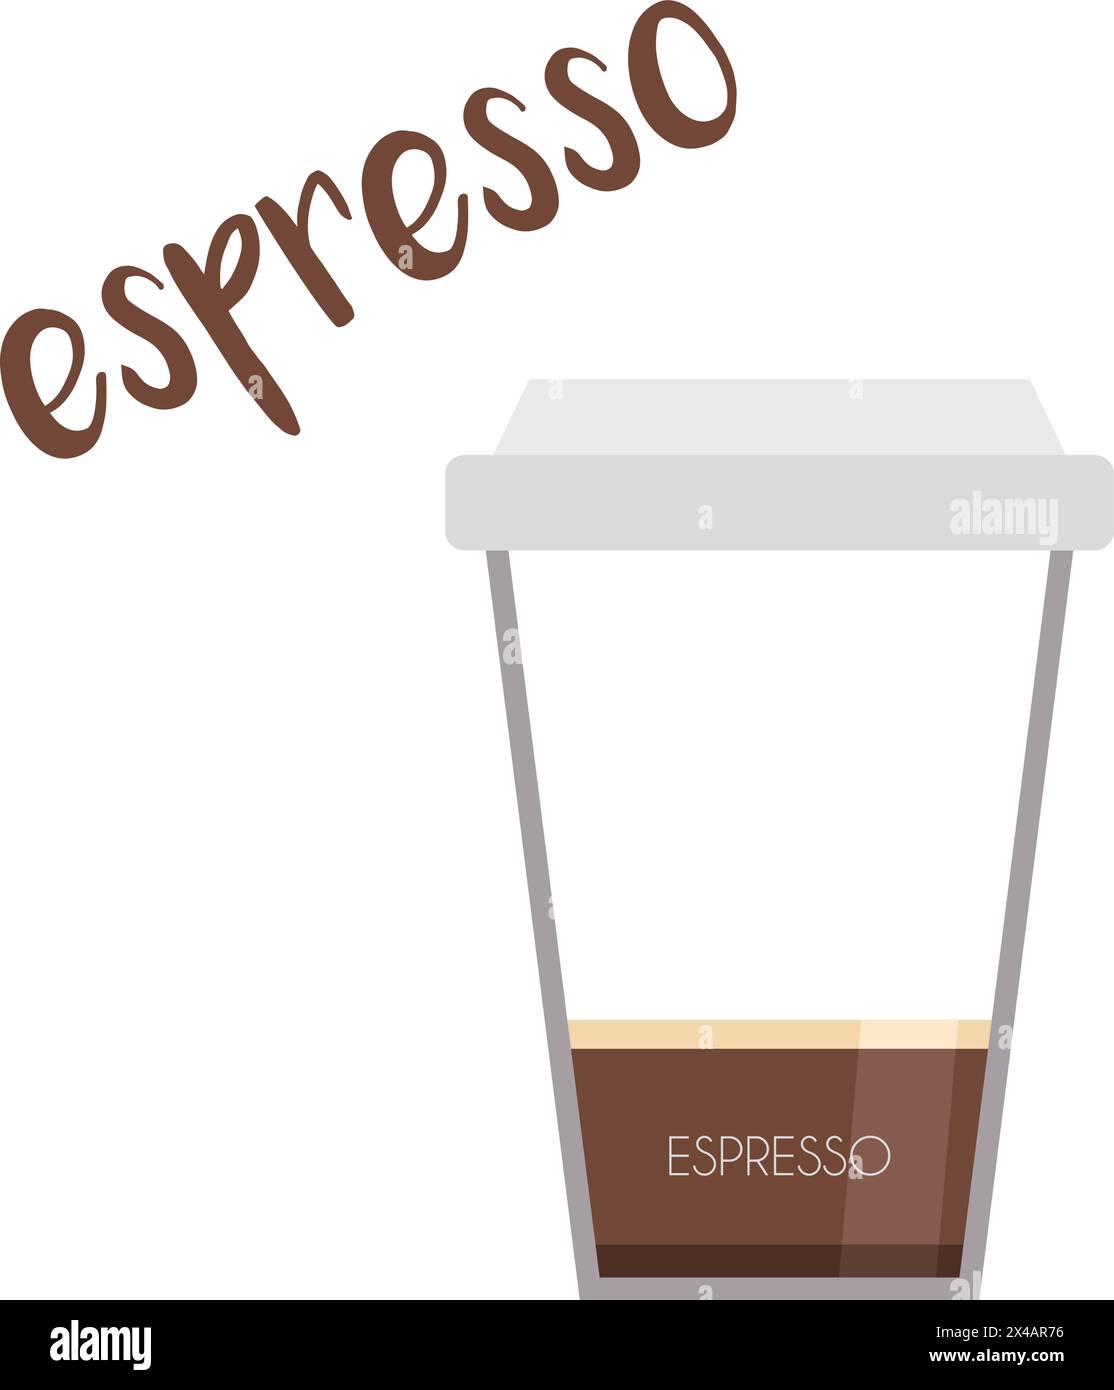 Illustration vectorielle d'une icône de tasse à café Espresso avec sa préparation et ses proportions. Illustration de Vecteur